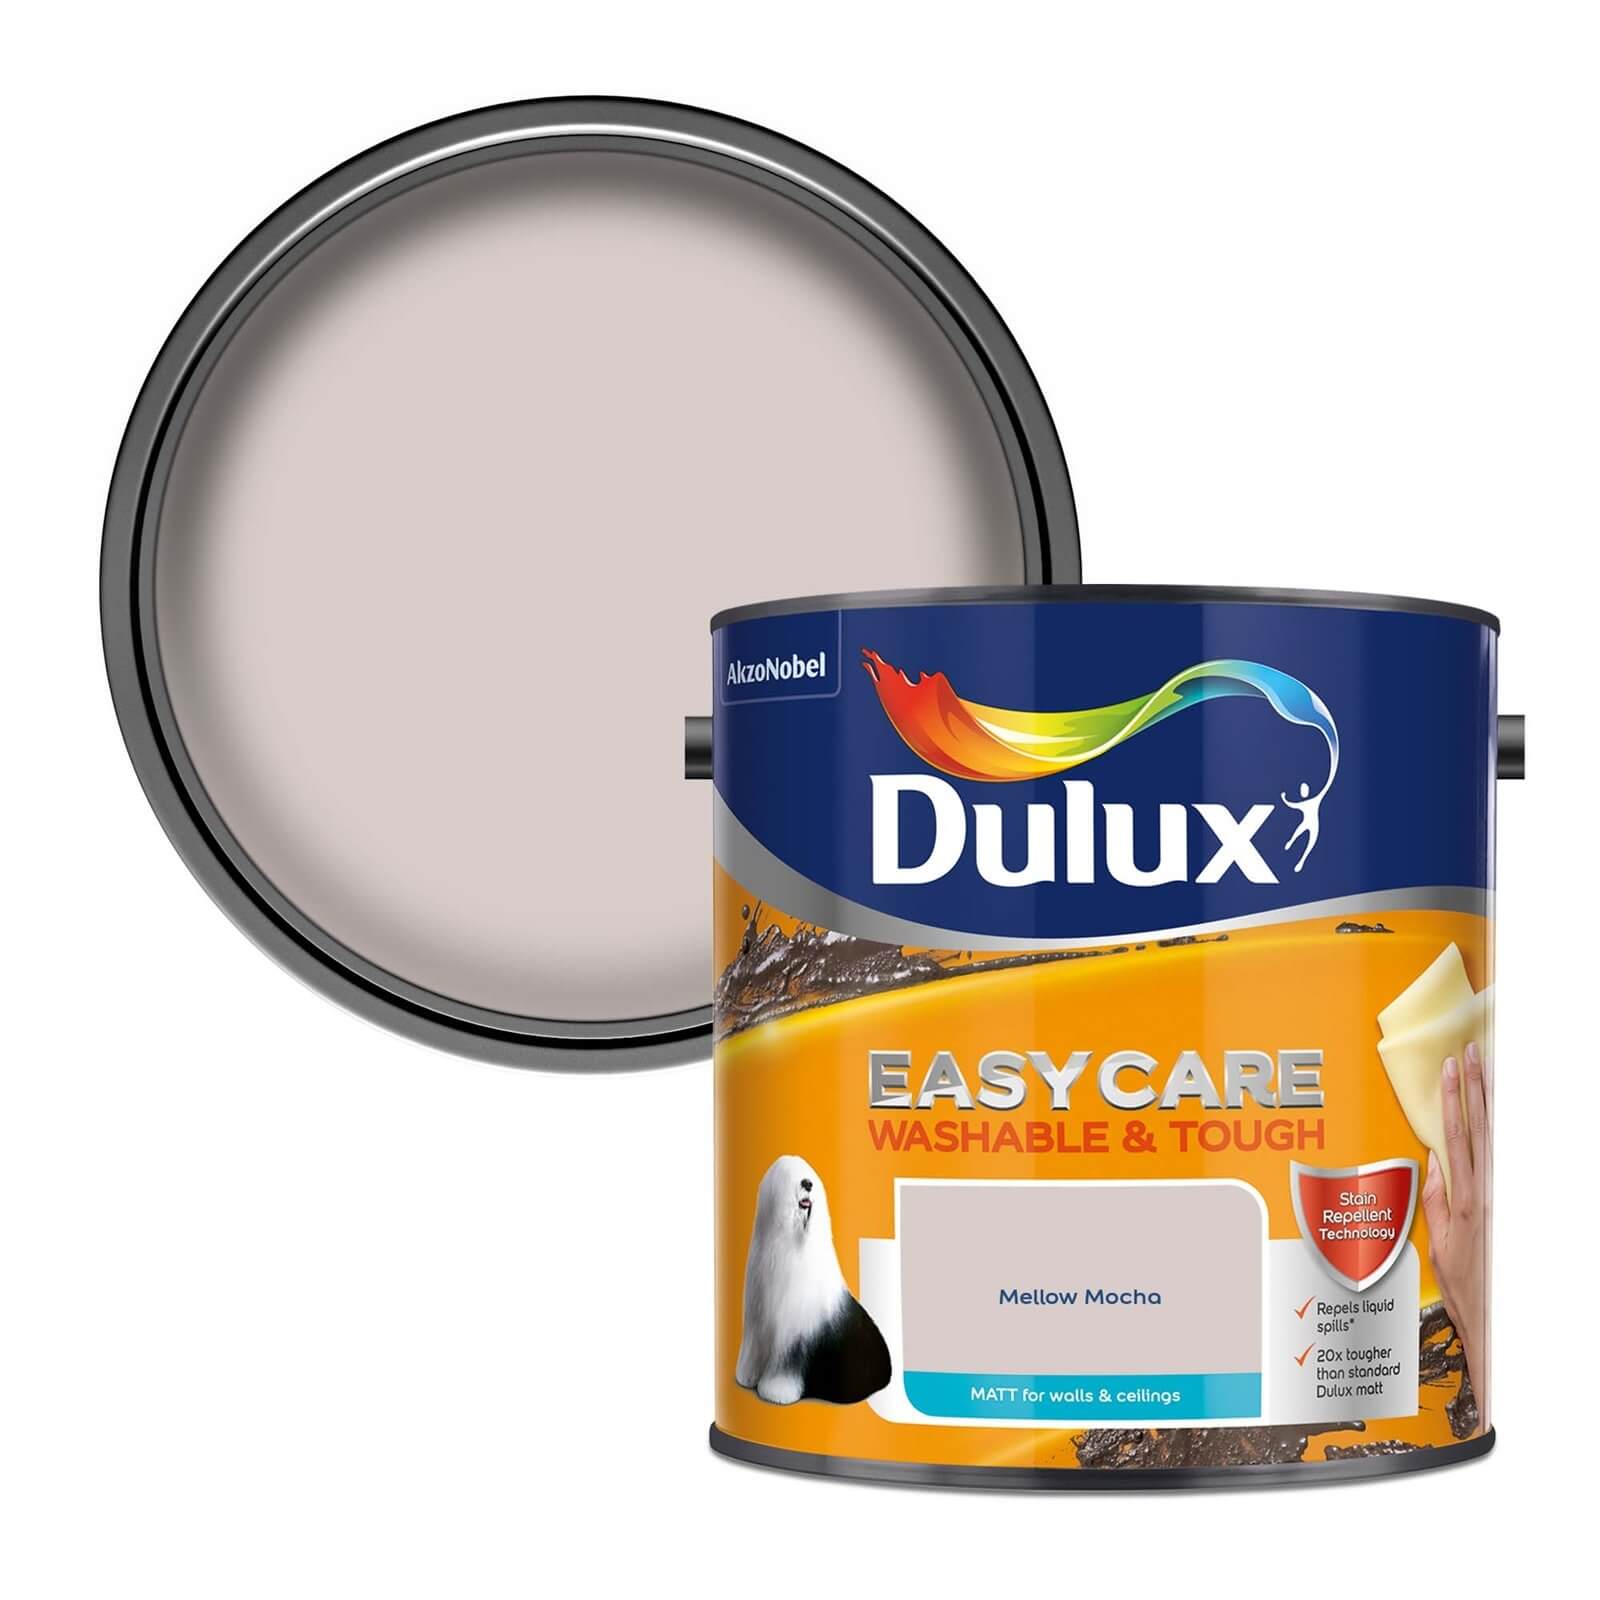 Dulux Easycare Washable & Tough Matt Paint Mellow Mocha - 2.5L